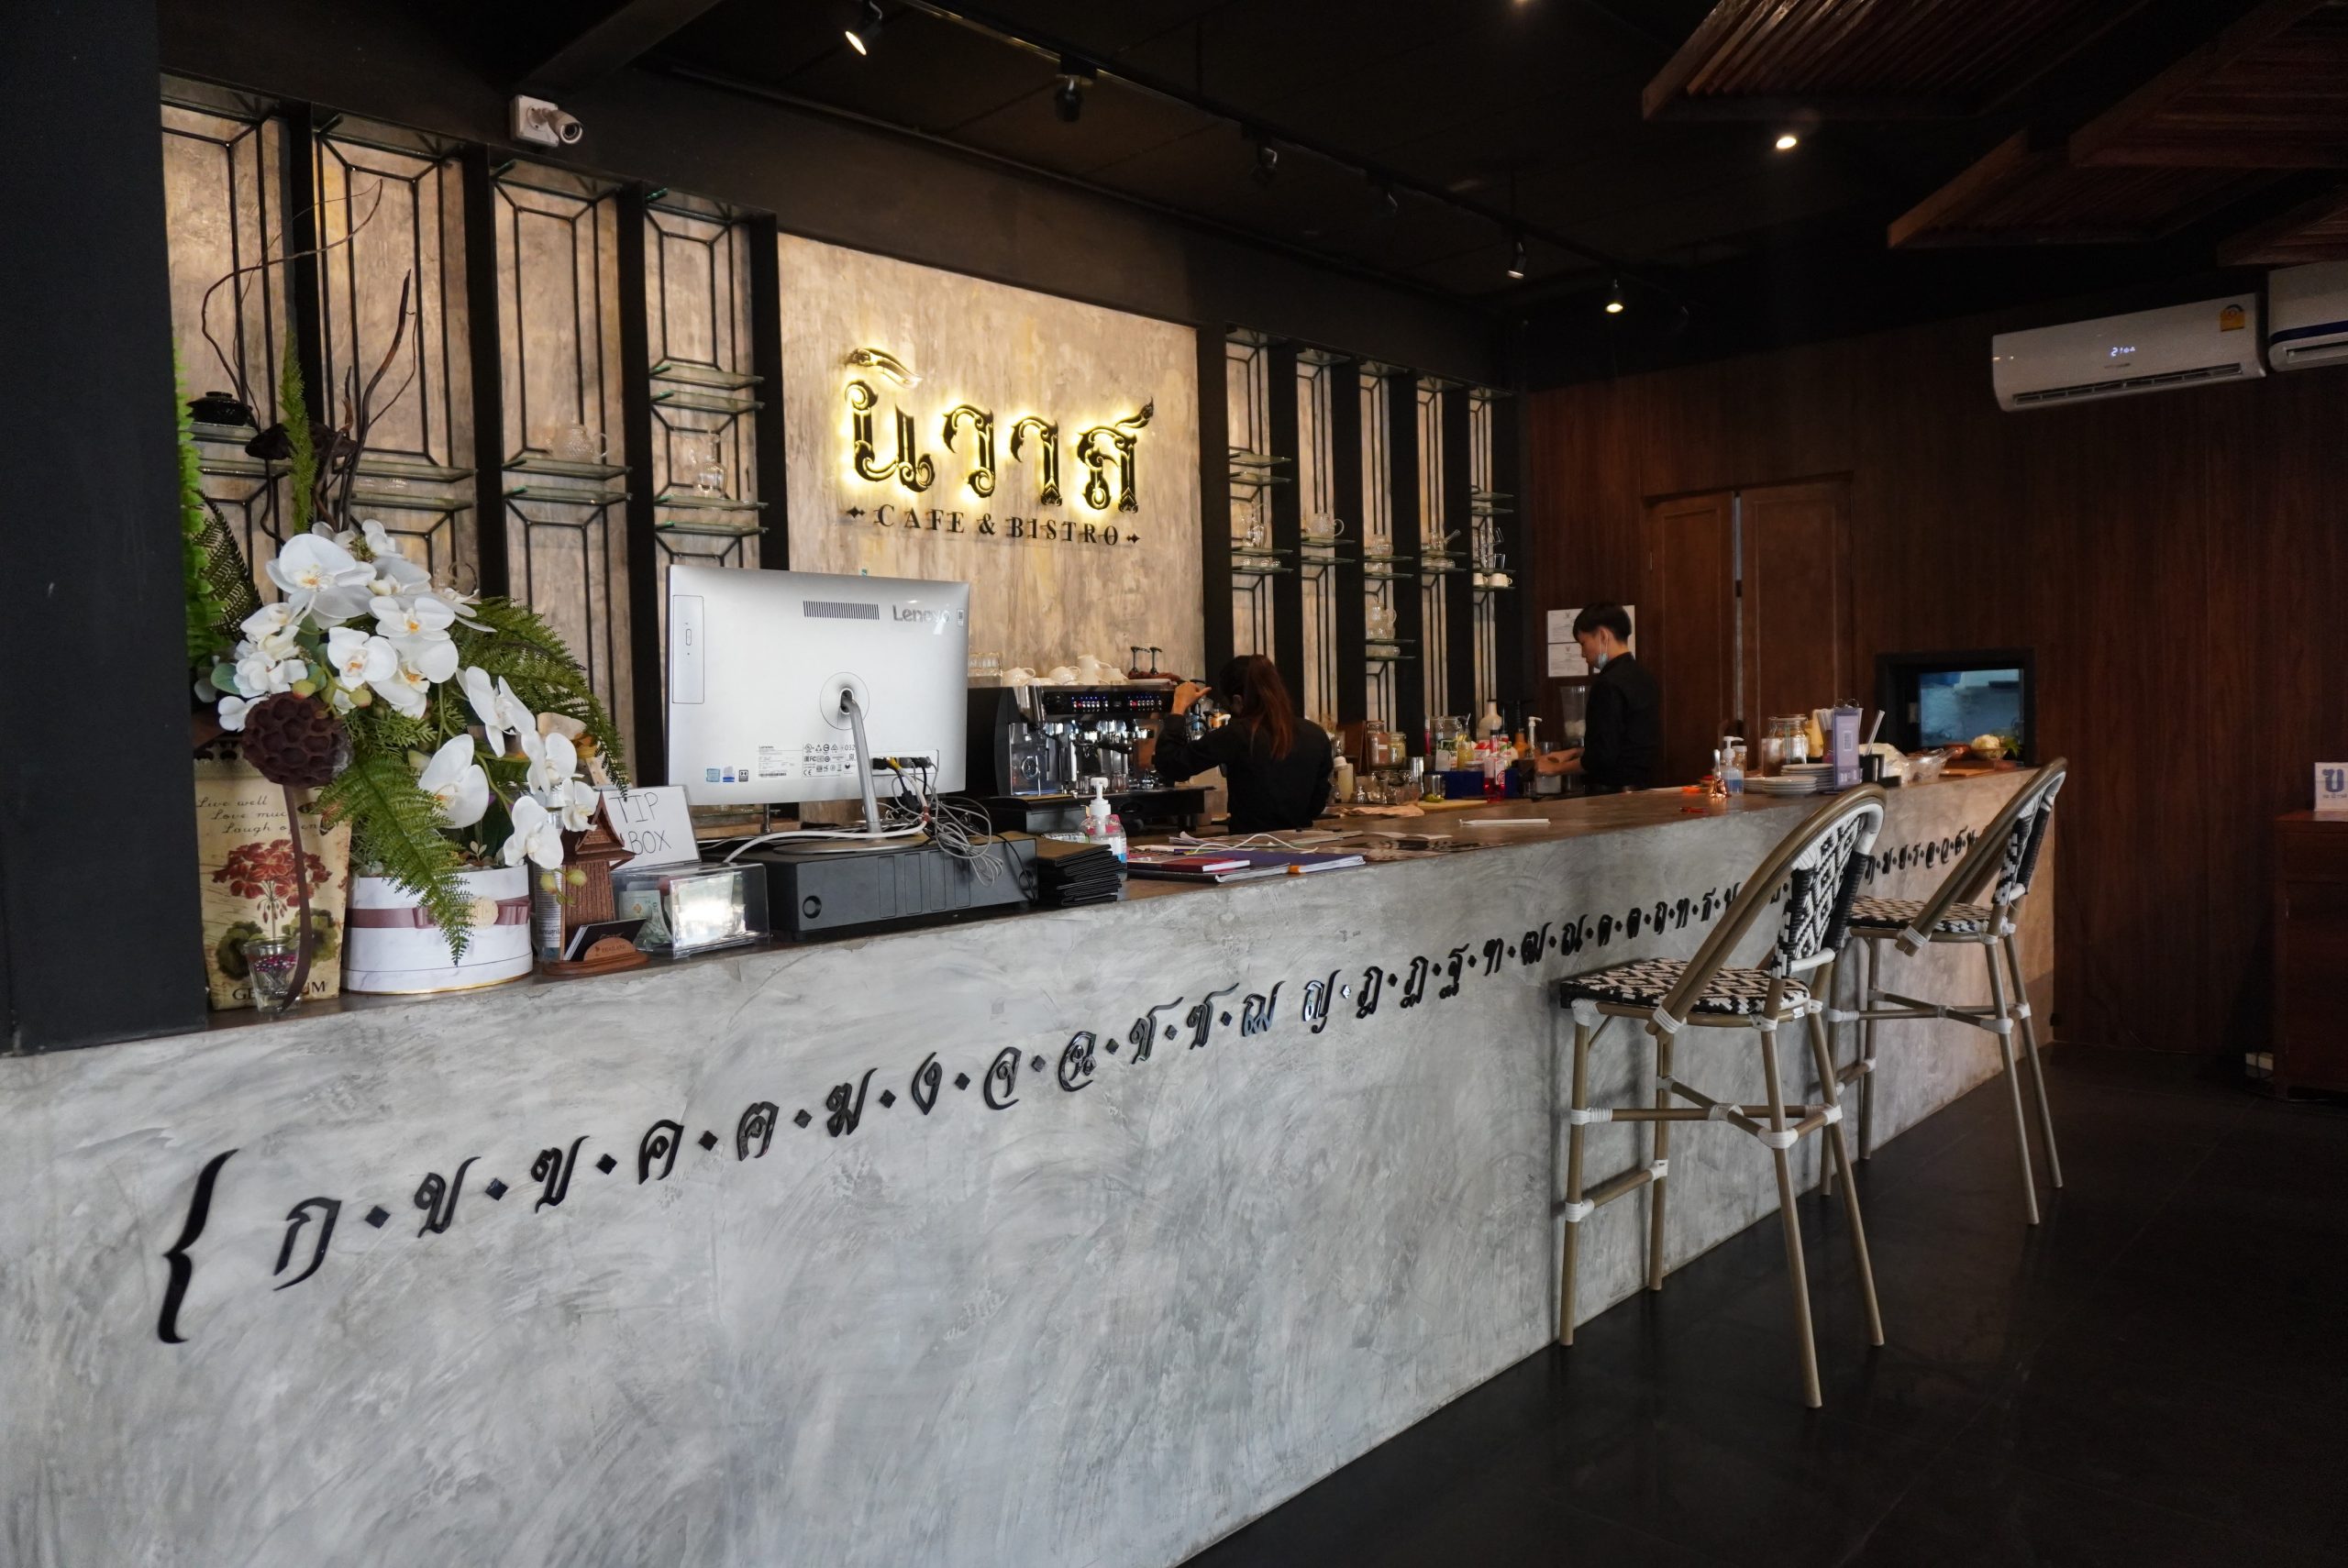 นิวาส Café & Bistro ตัวจริงเรื่องอาหารไทย ร้านอาหารเปิดใหม่ ที่เติบใหญ่ท่ามกลางโควิด